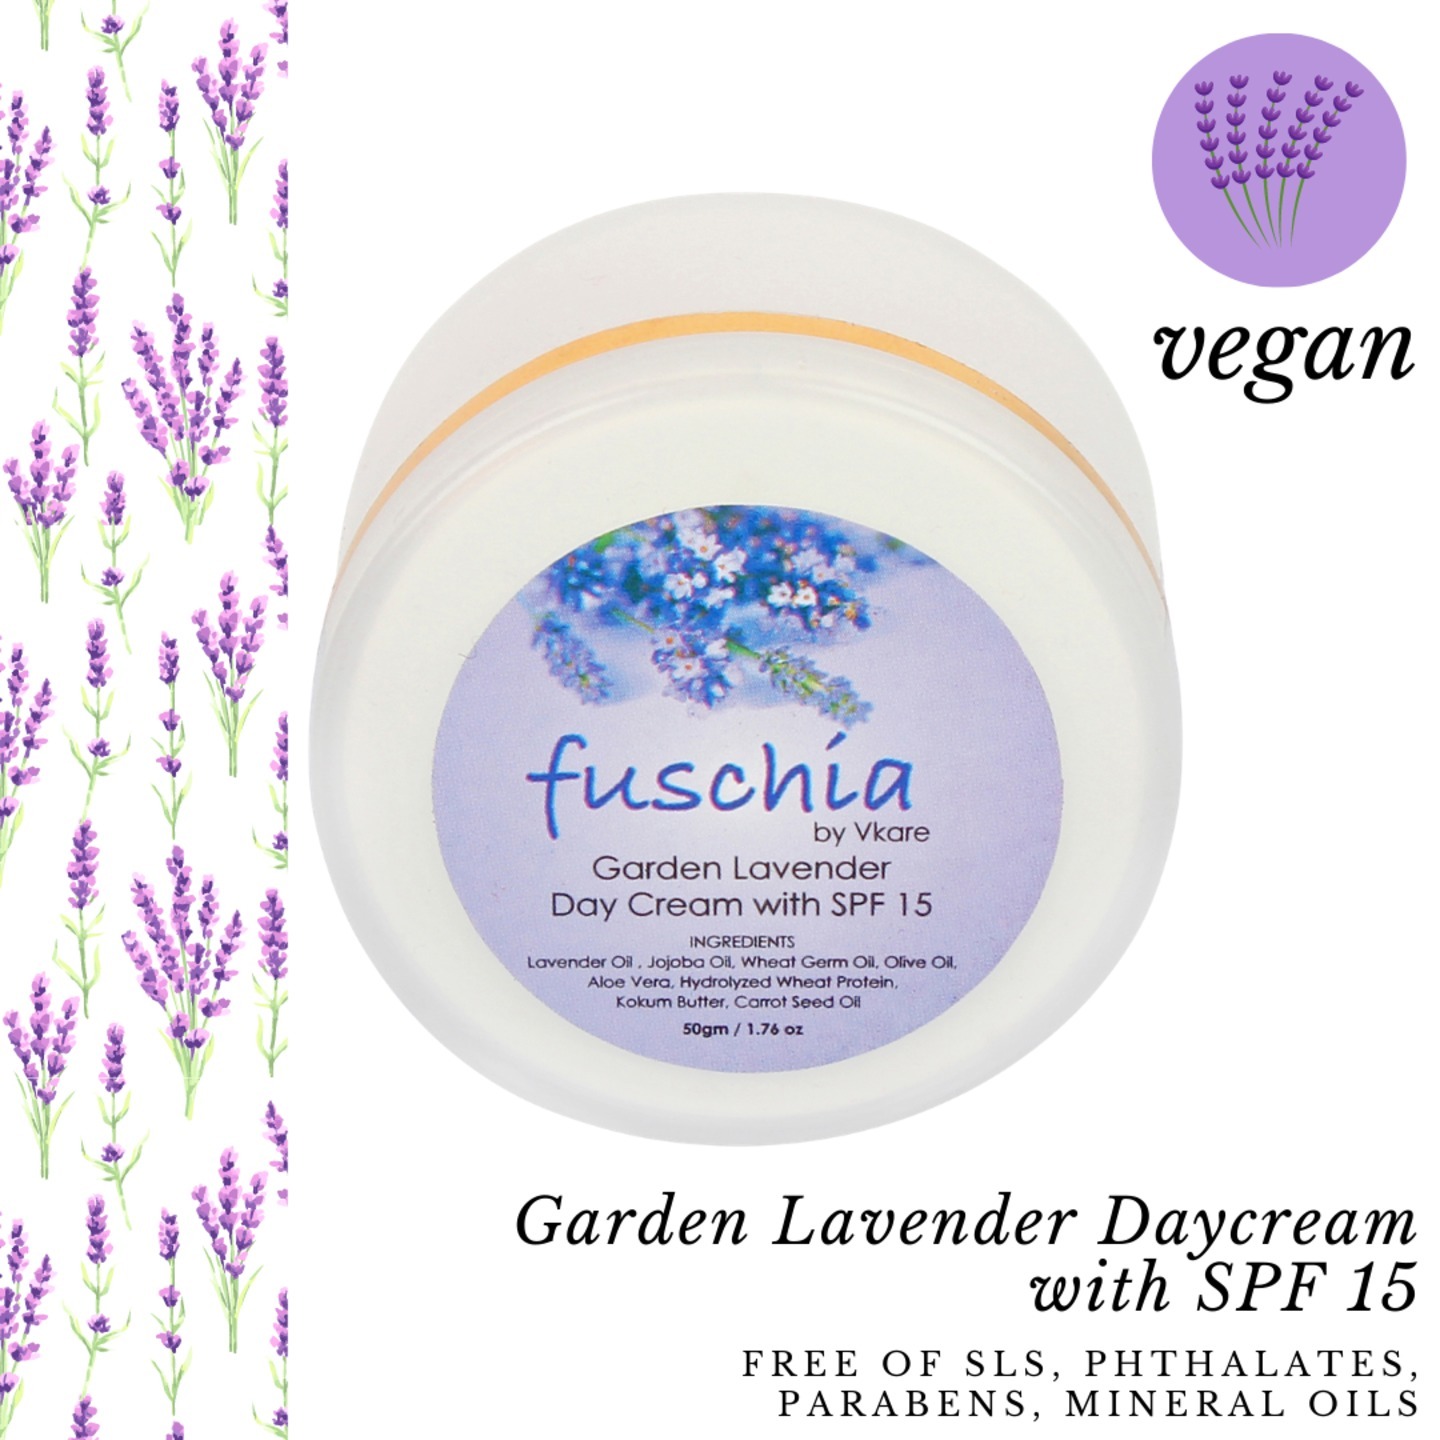 Fuschia - Garden Lavender Day Cream with SPF 15